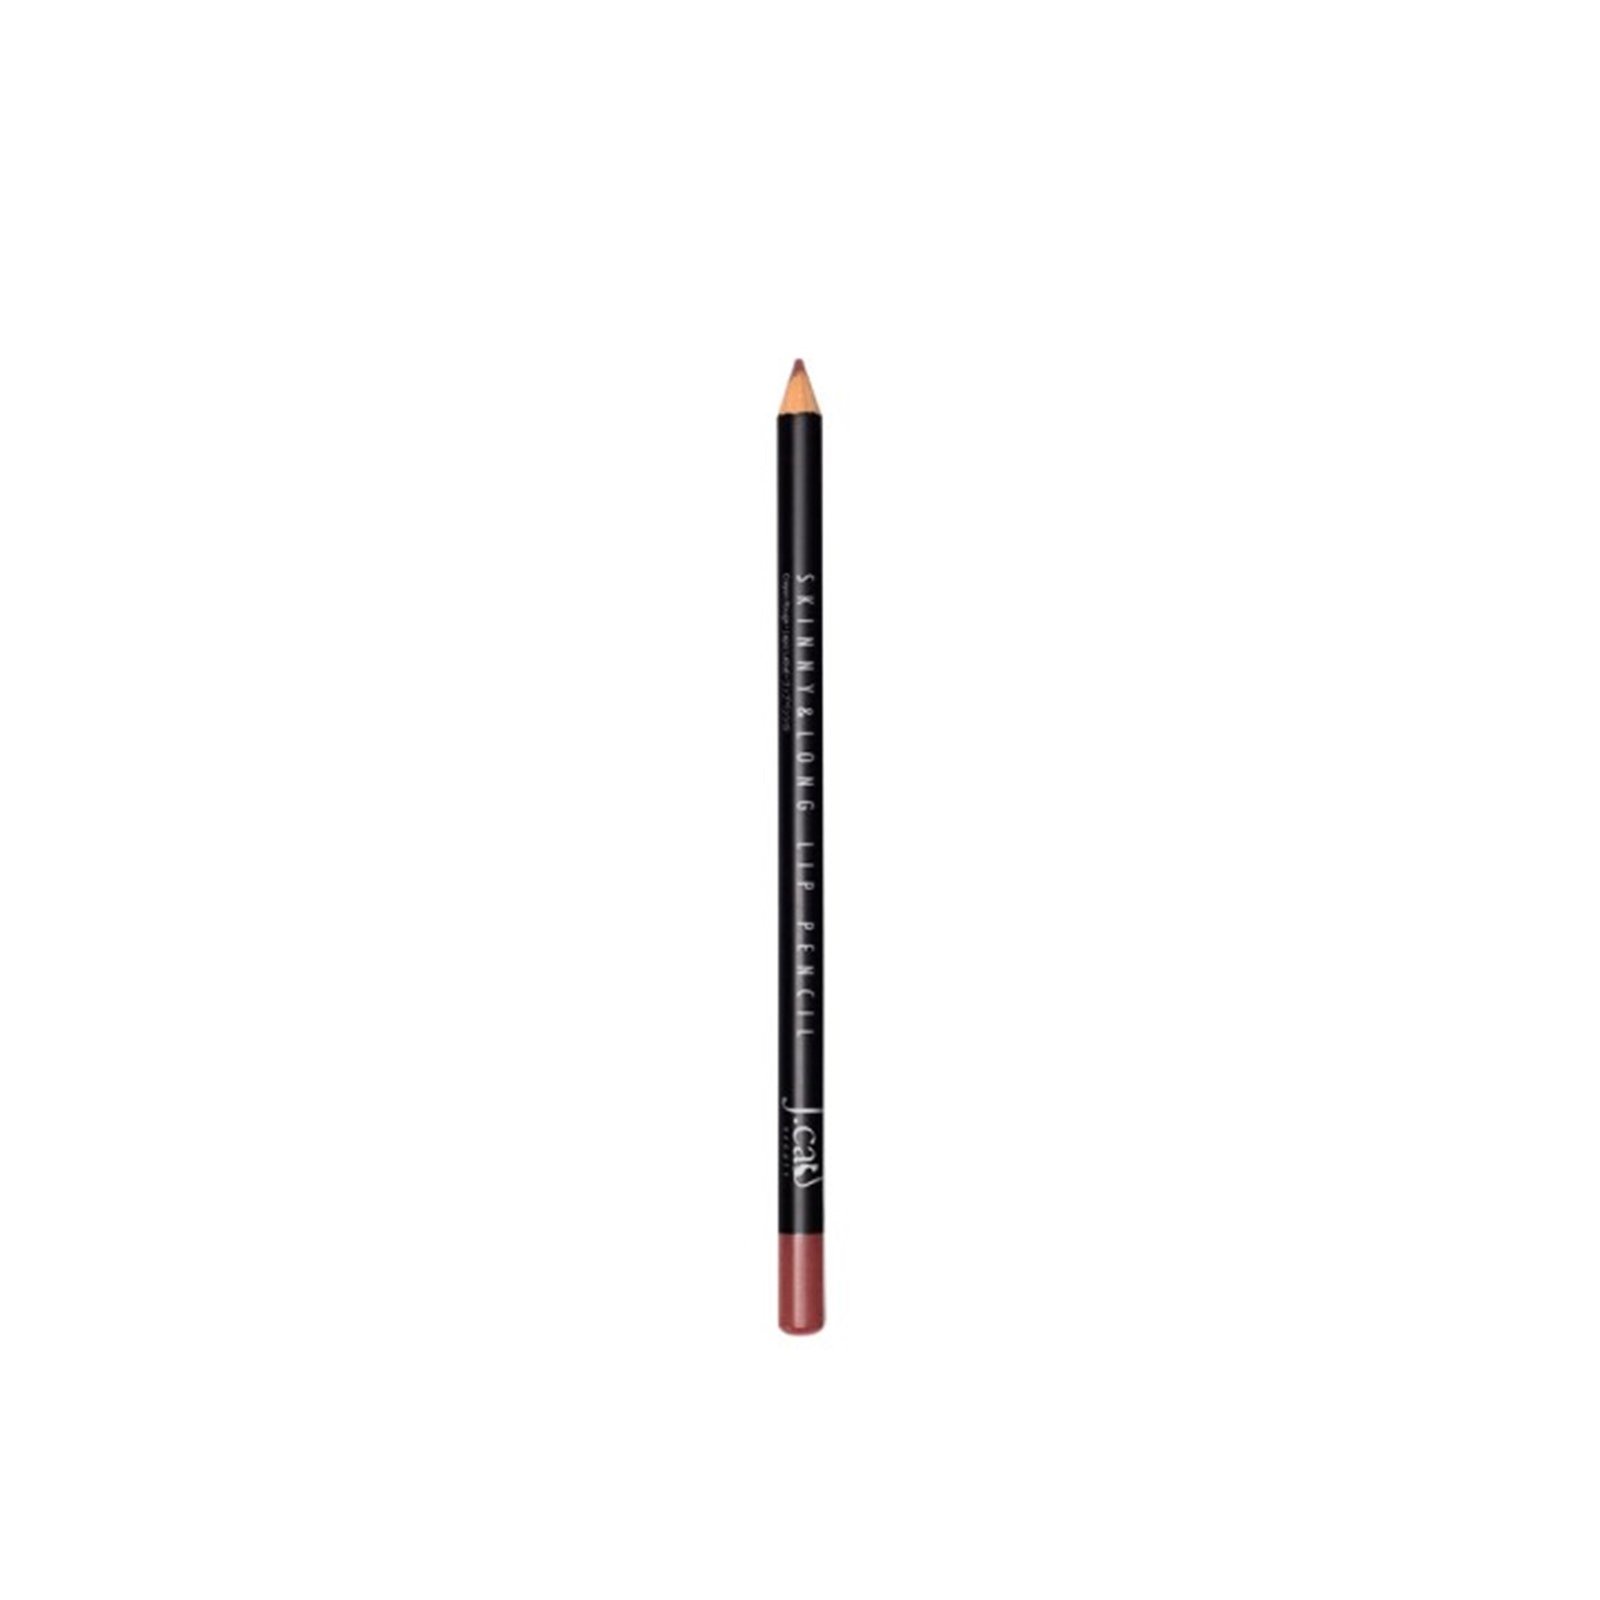 J.Cat Skinny & Long Lip Pencil 103 Puce 2g